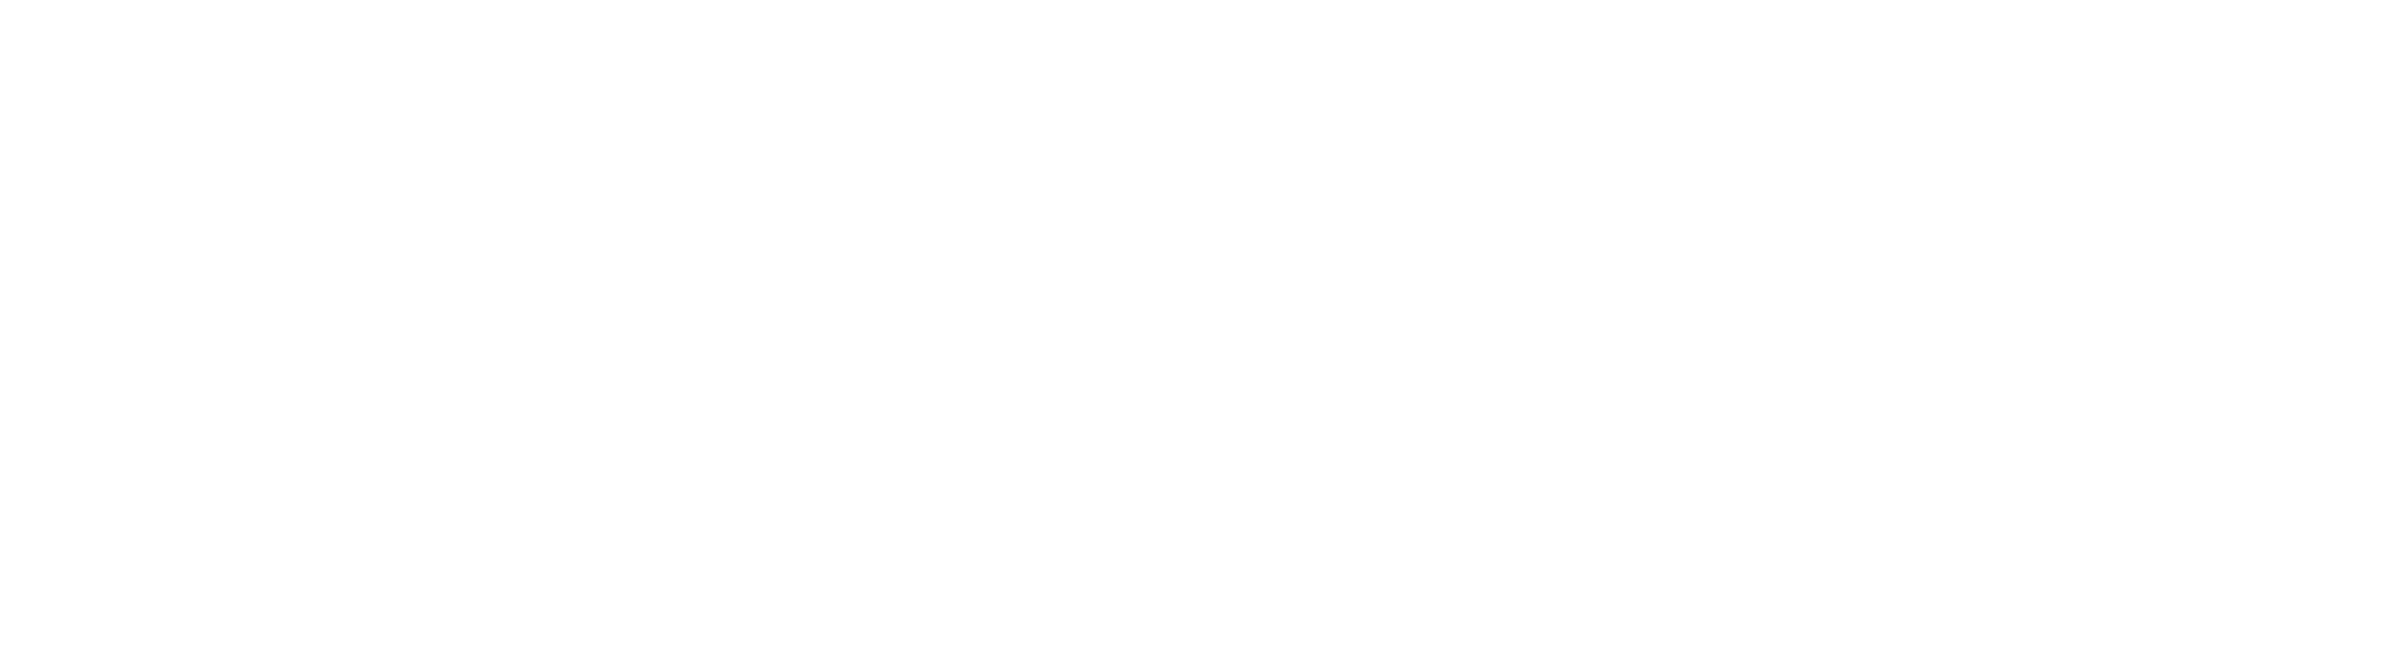 FIFA Logo PNG Photo